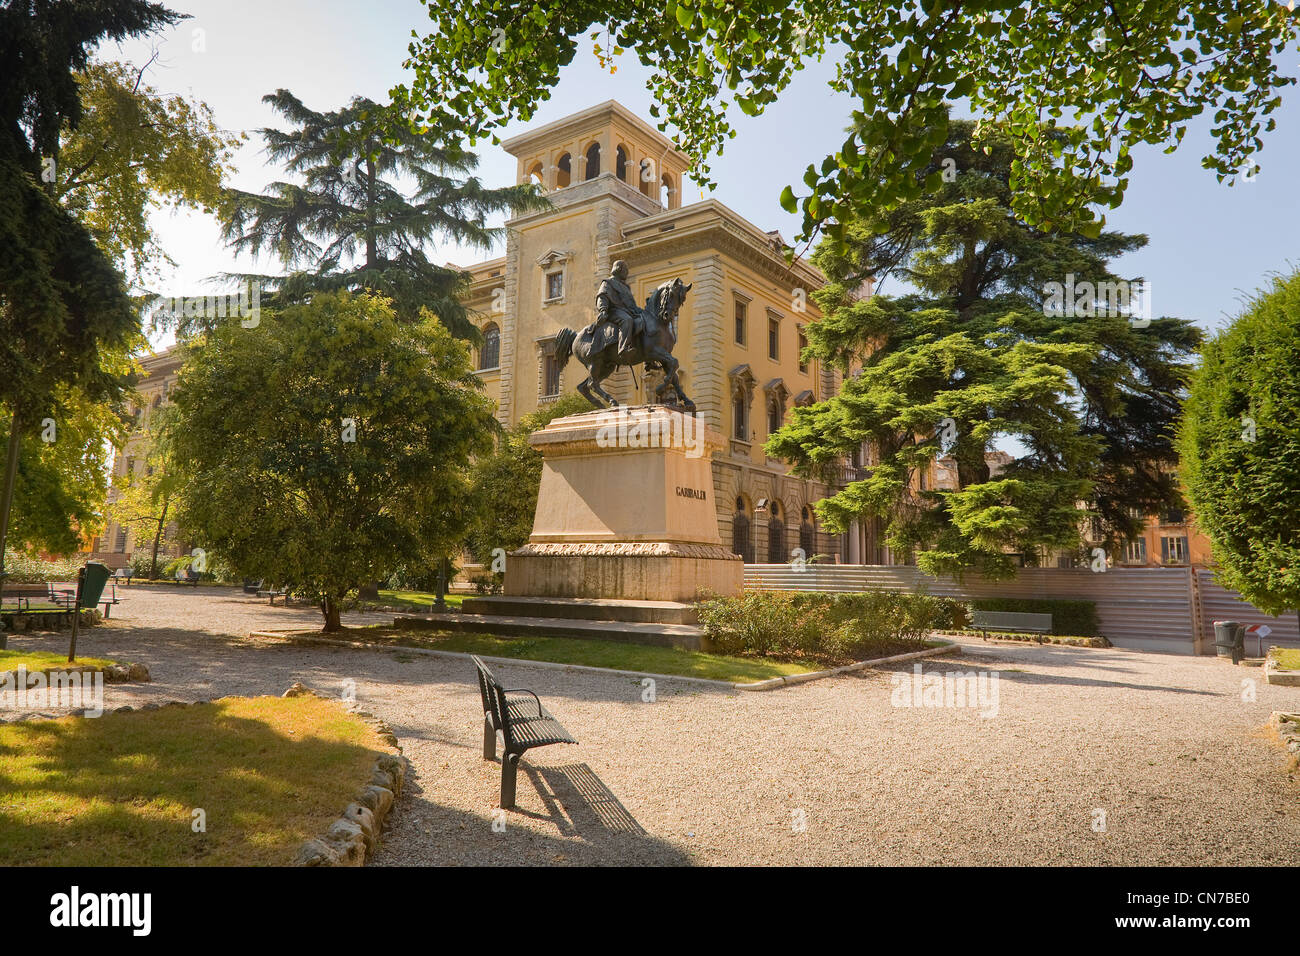 Monté sur socle statue équestre de Garibaldi, Vérone Italie Banque D'Images